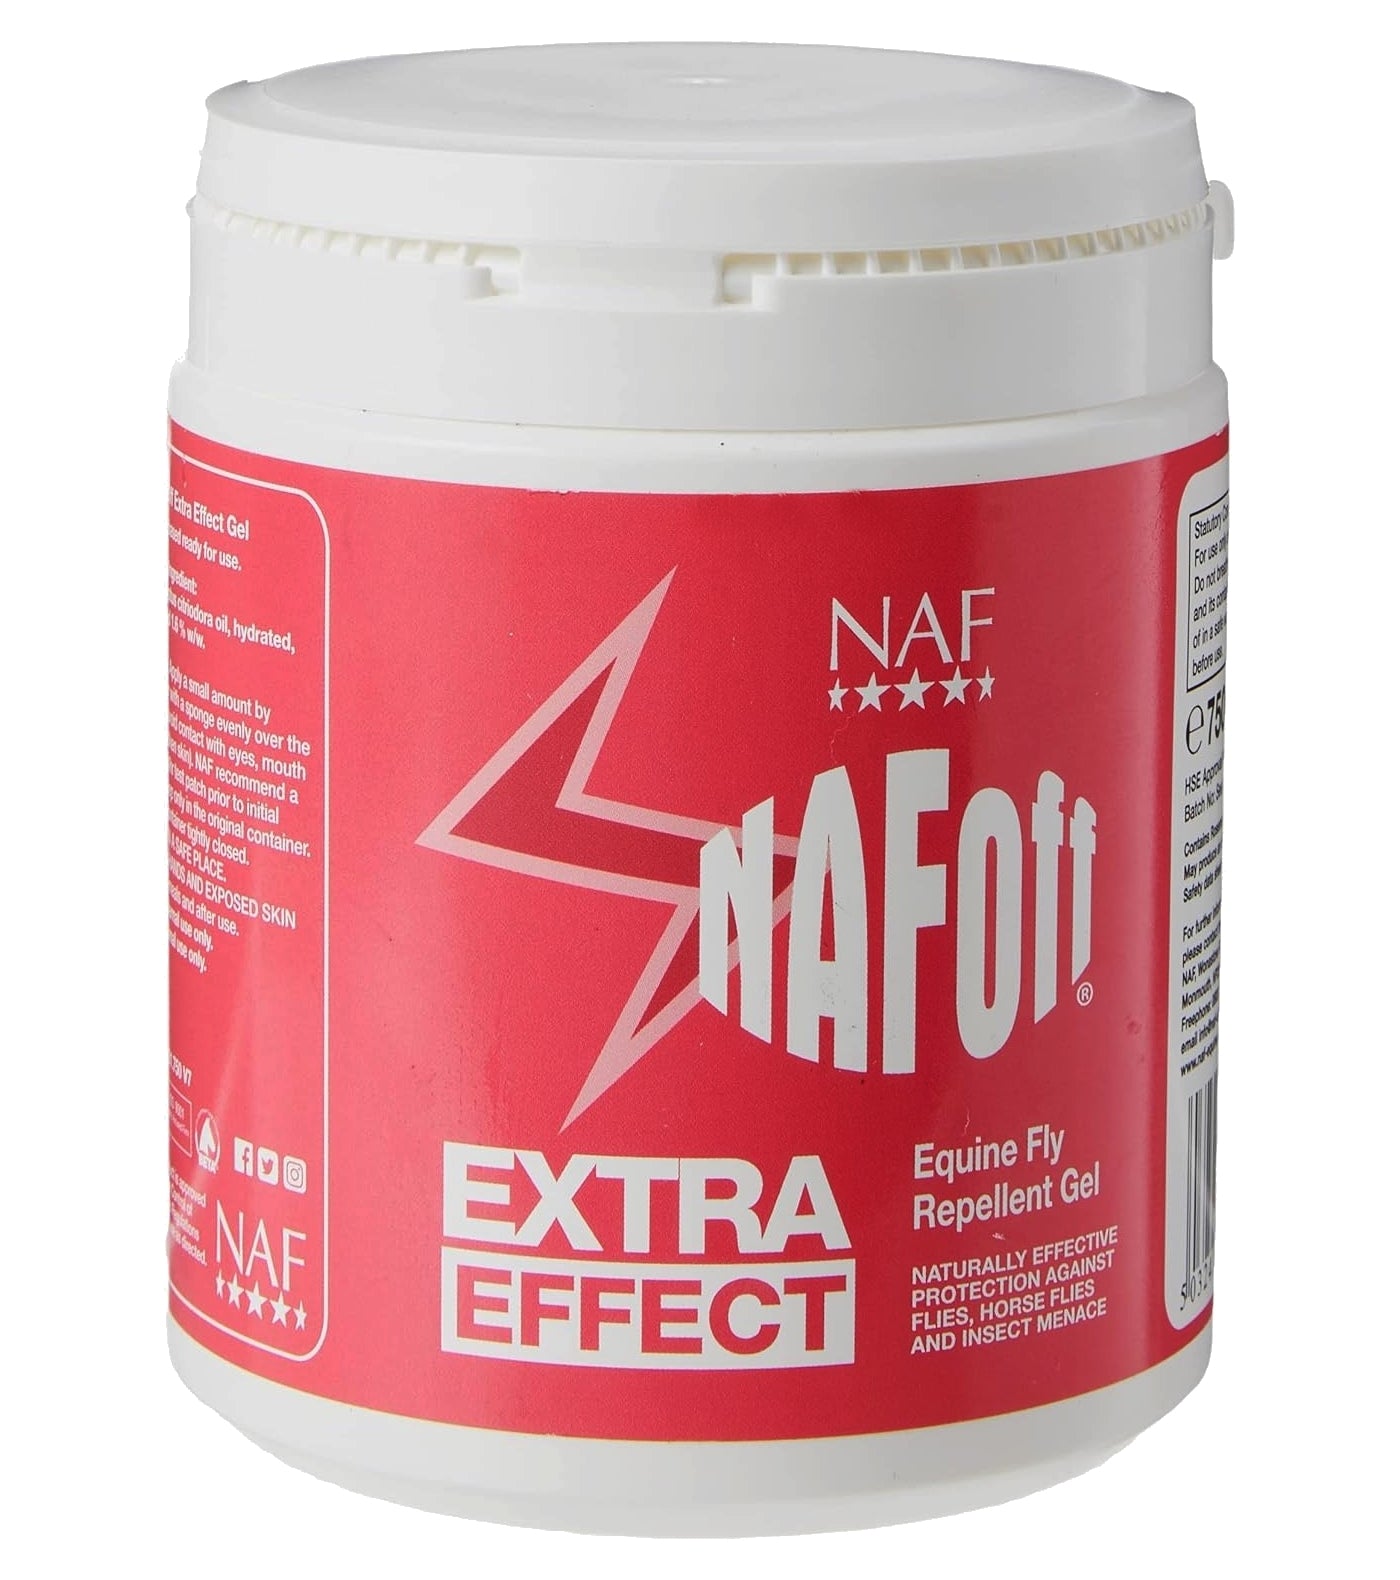 NAF OFF - Extra Effect - Equine Fly Repellent Gel - Buy Online SPR Centre UK